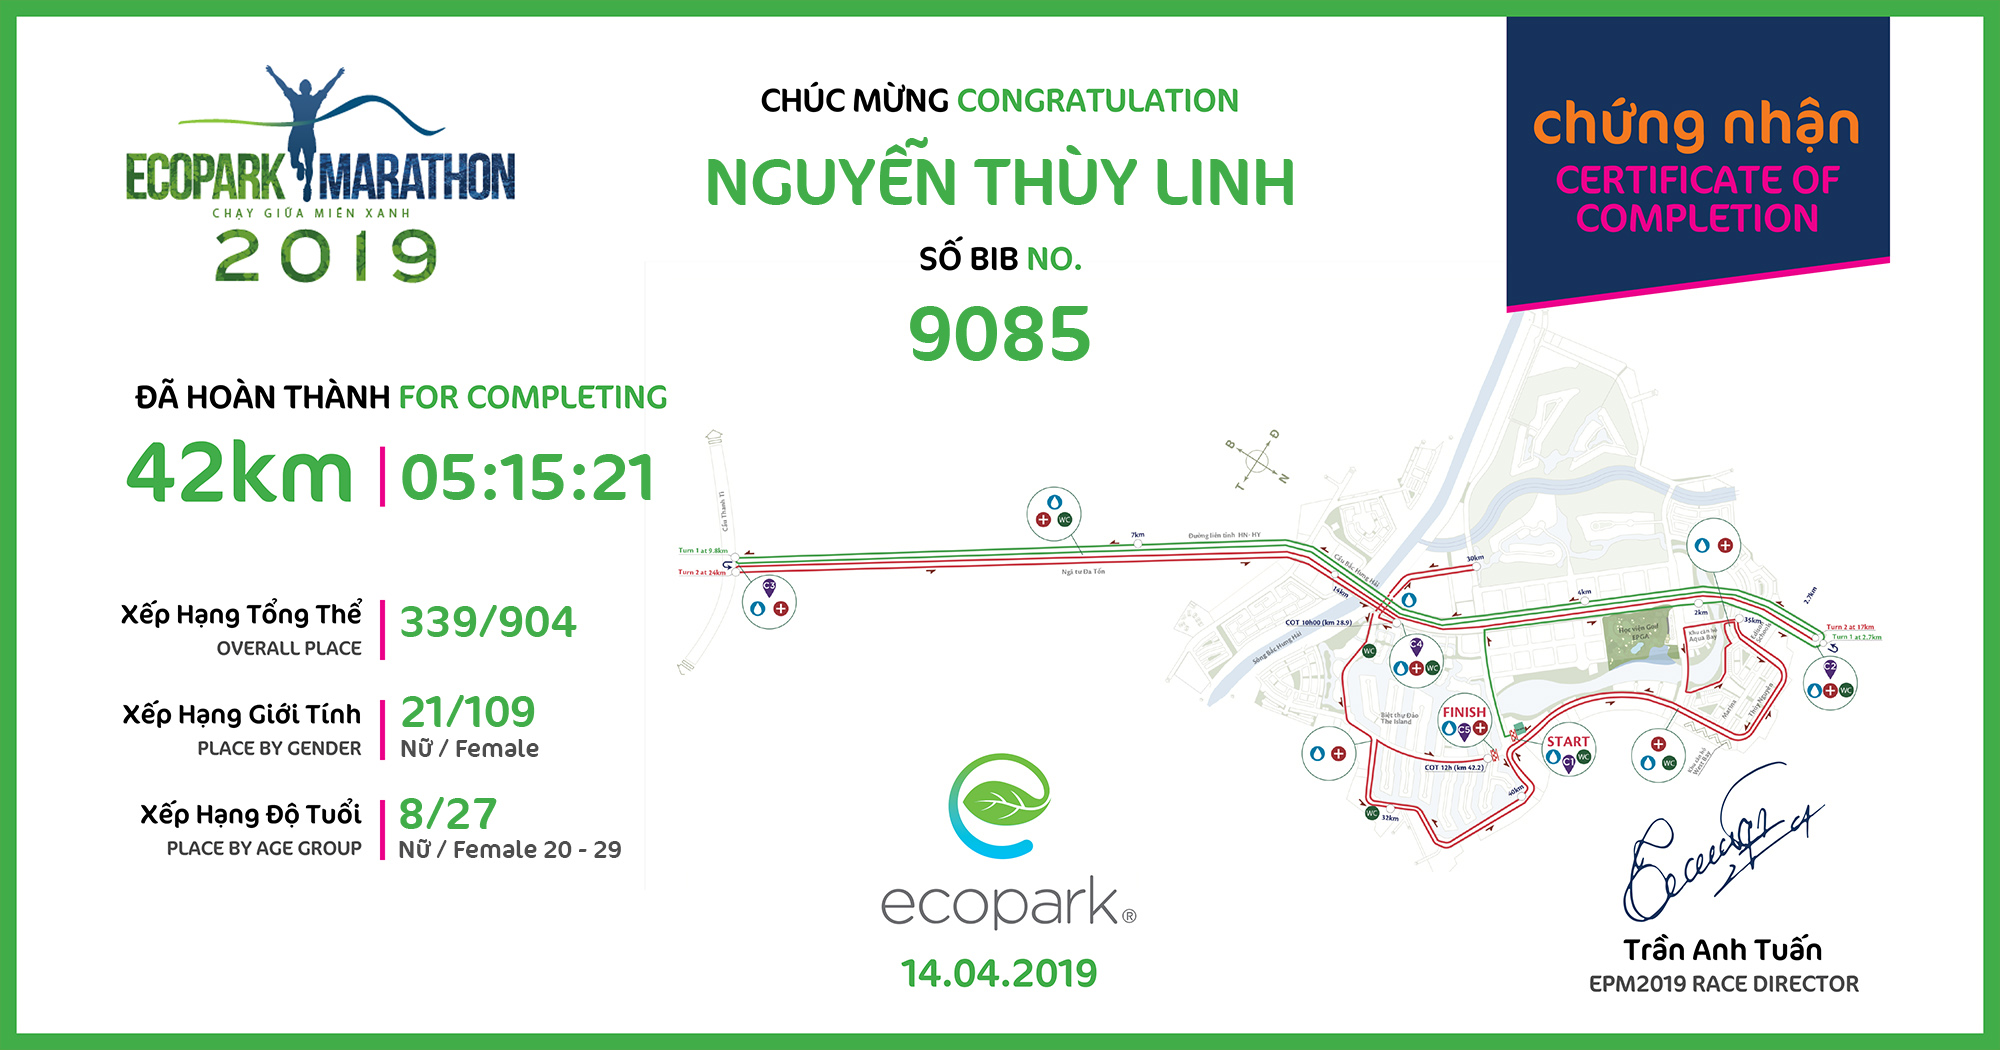 9085 - Nguyễn Thùy Linh